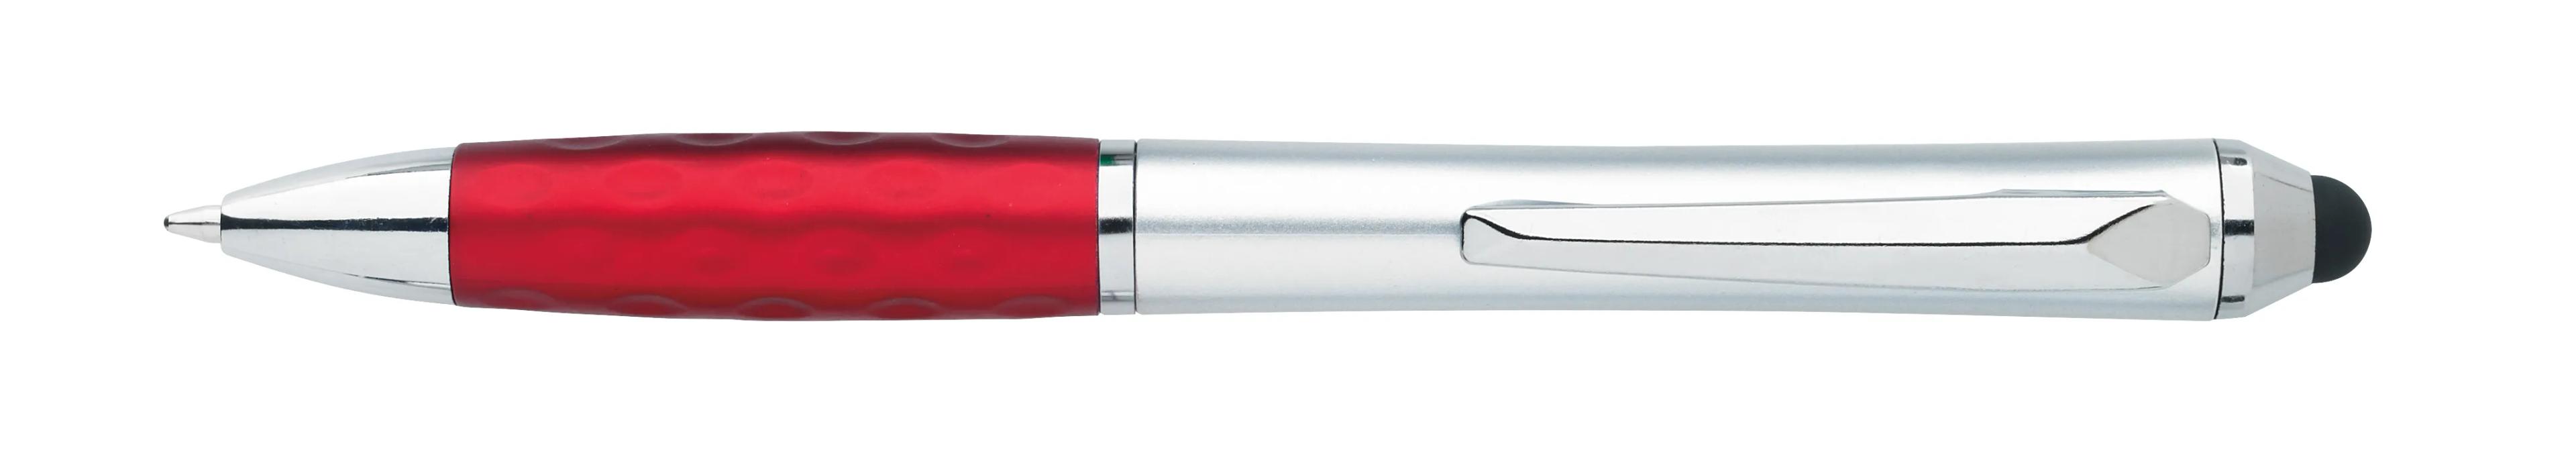 Tev Silver Stylus Pen 24 of 55